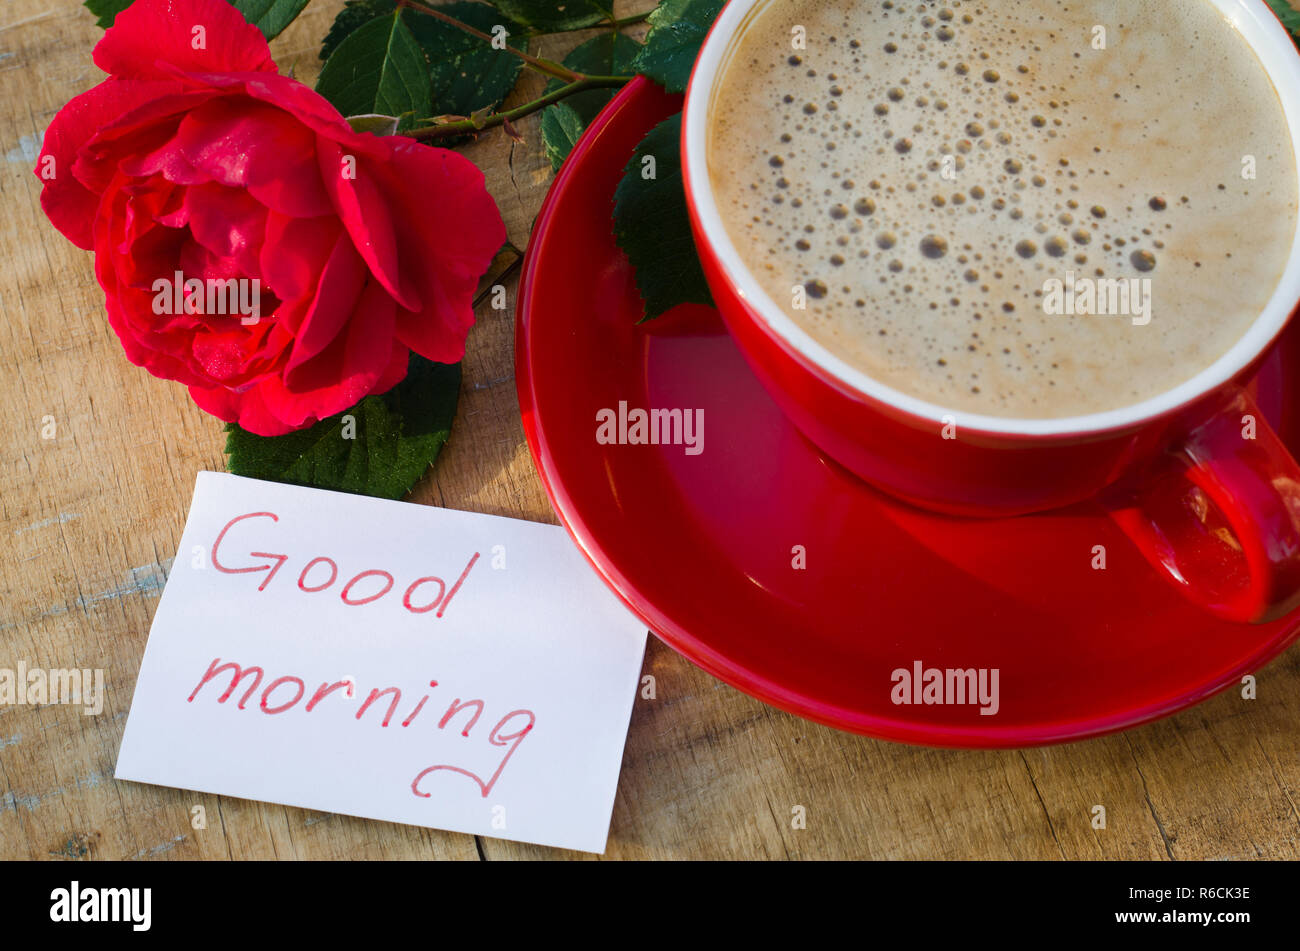 Kaffeetasse Mit Rote Rose Und Notizen Guten Morgen Stockfotografie Alamy